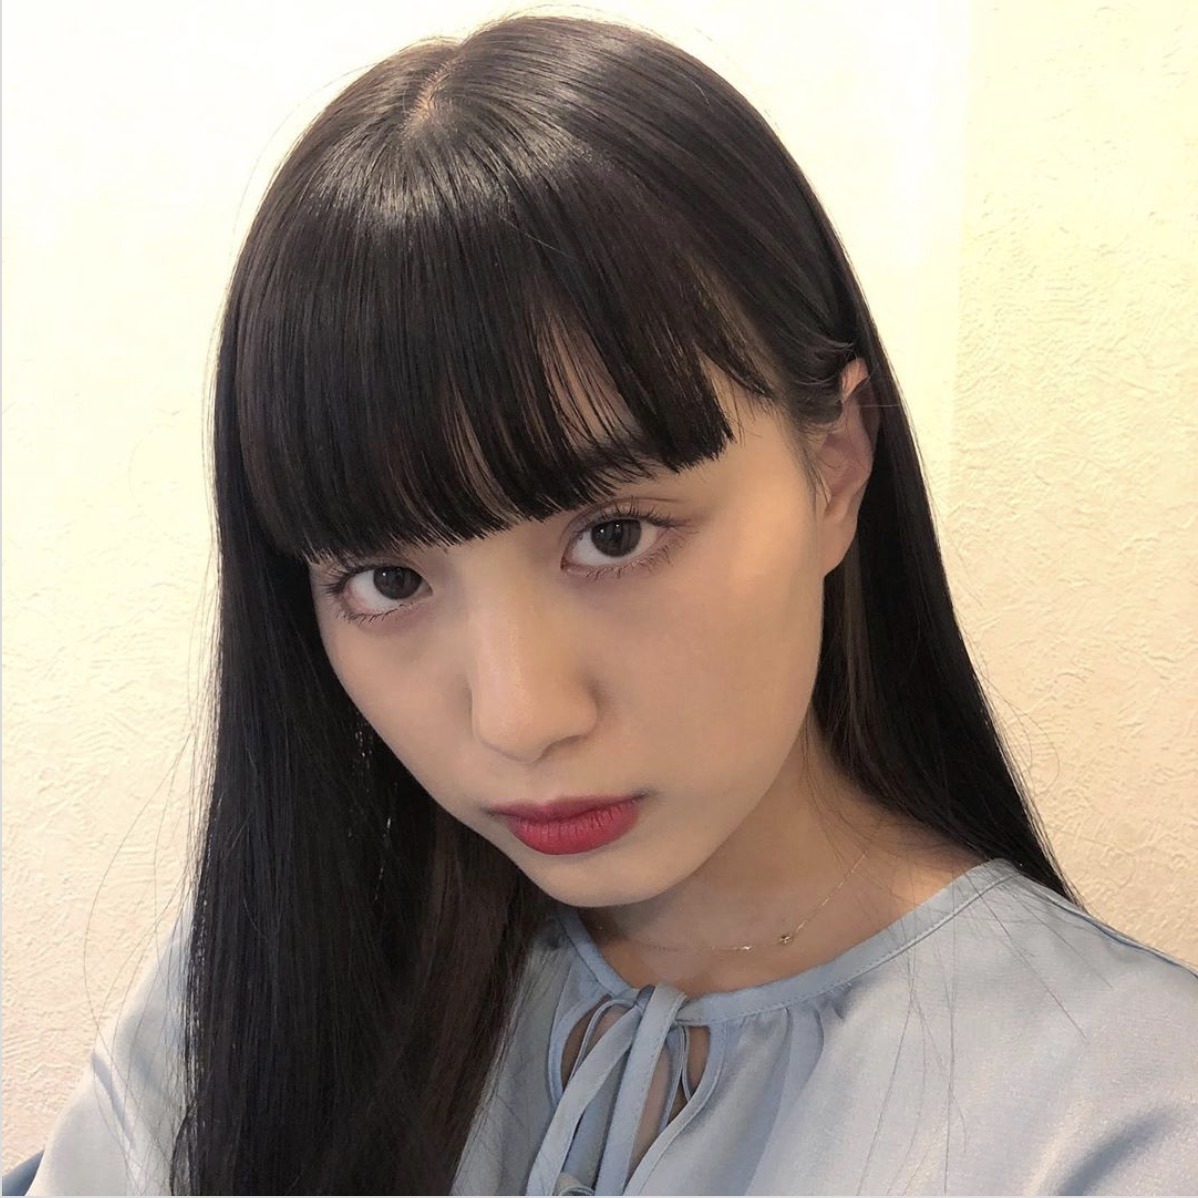 鶴嶋乃愛 Popteen 専属モデル卒業を発表 藤田ニコルやみちょぱも祝福 Rbb Today